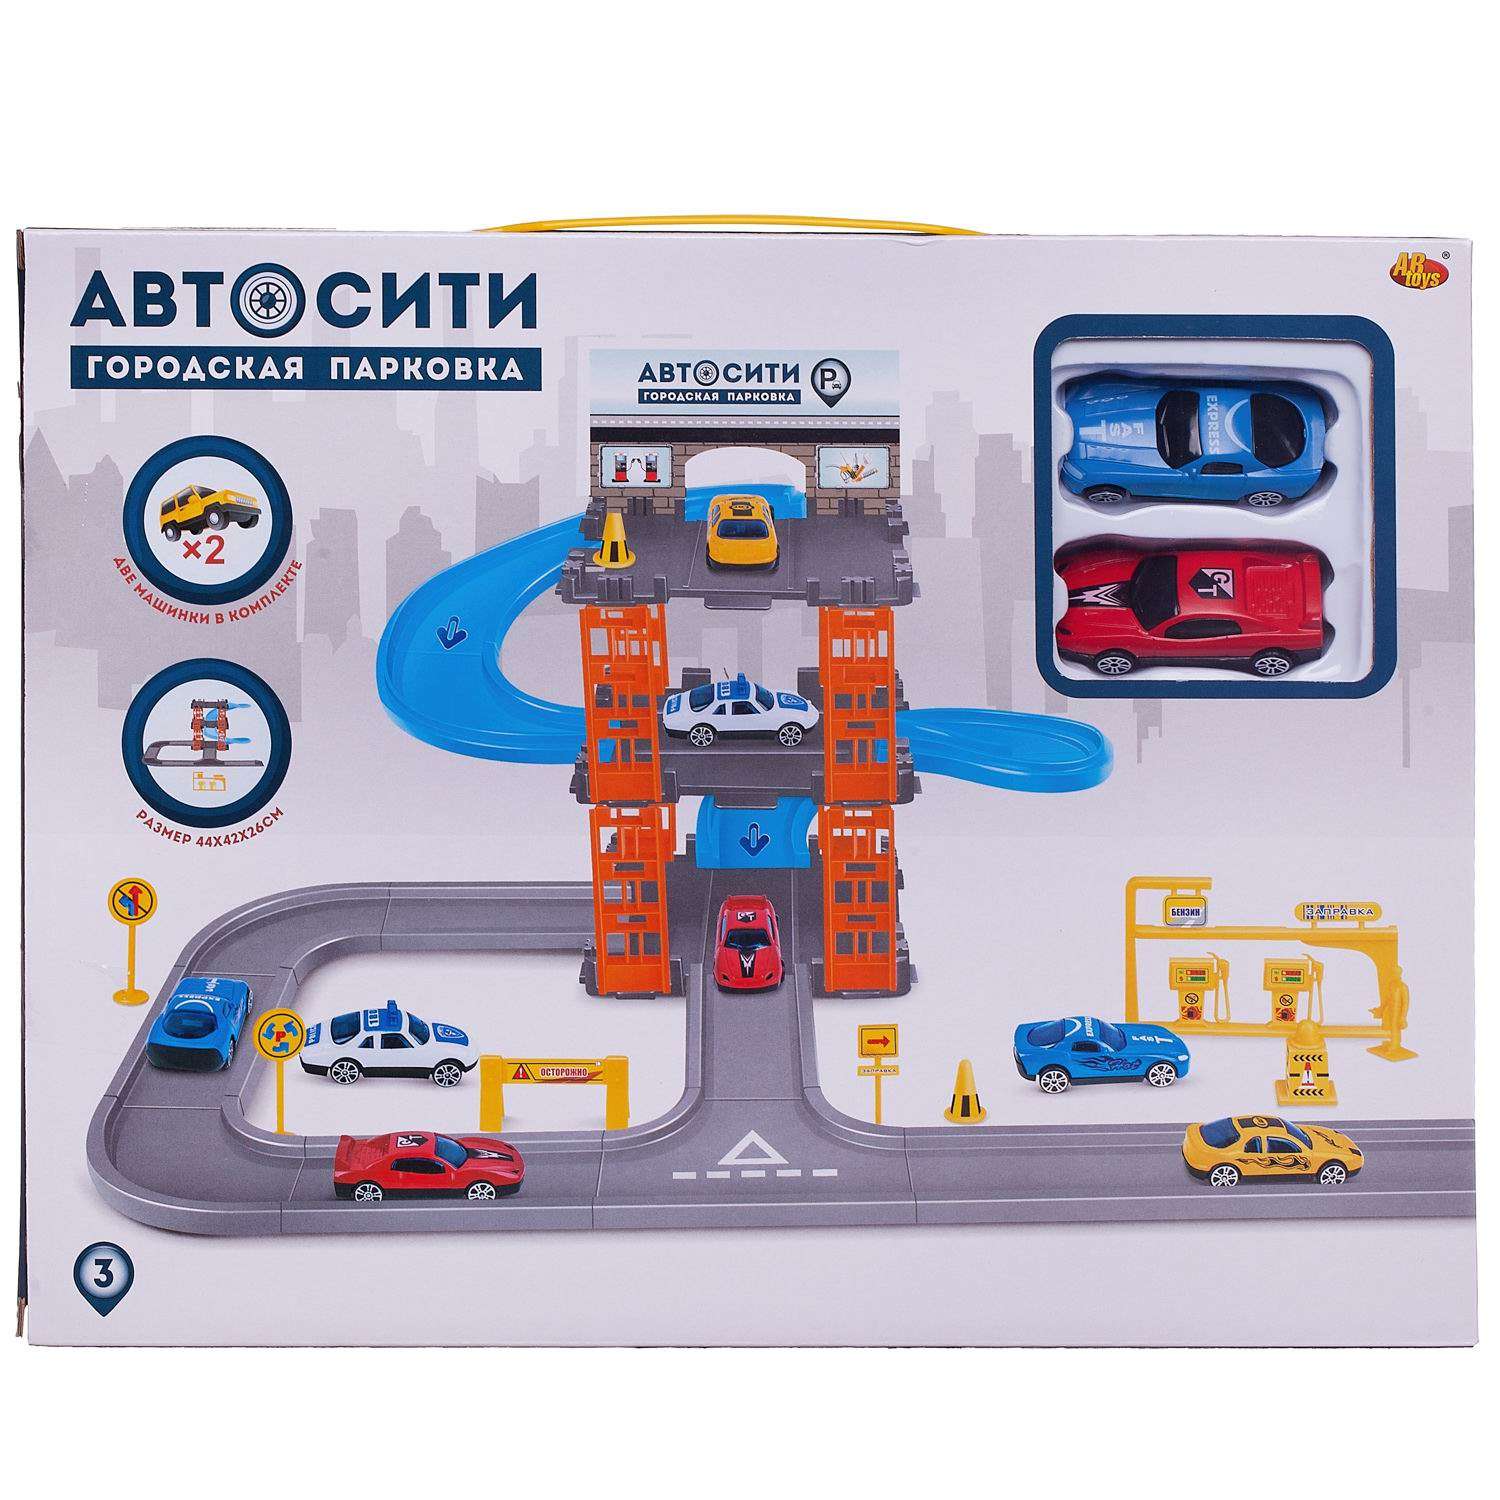 Парковка АвтоСити ABTOYS 3-х уровневая в наборе с машинками и игровыми предметами PT-01012 - фото 2